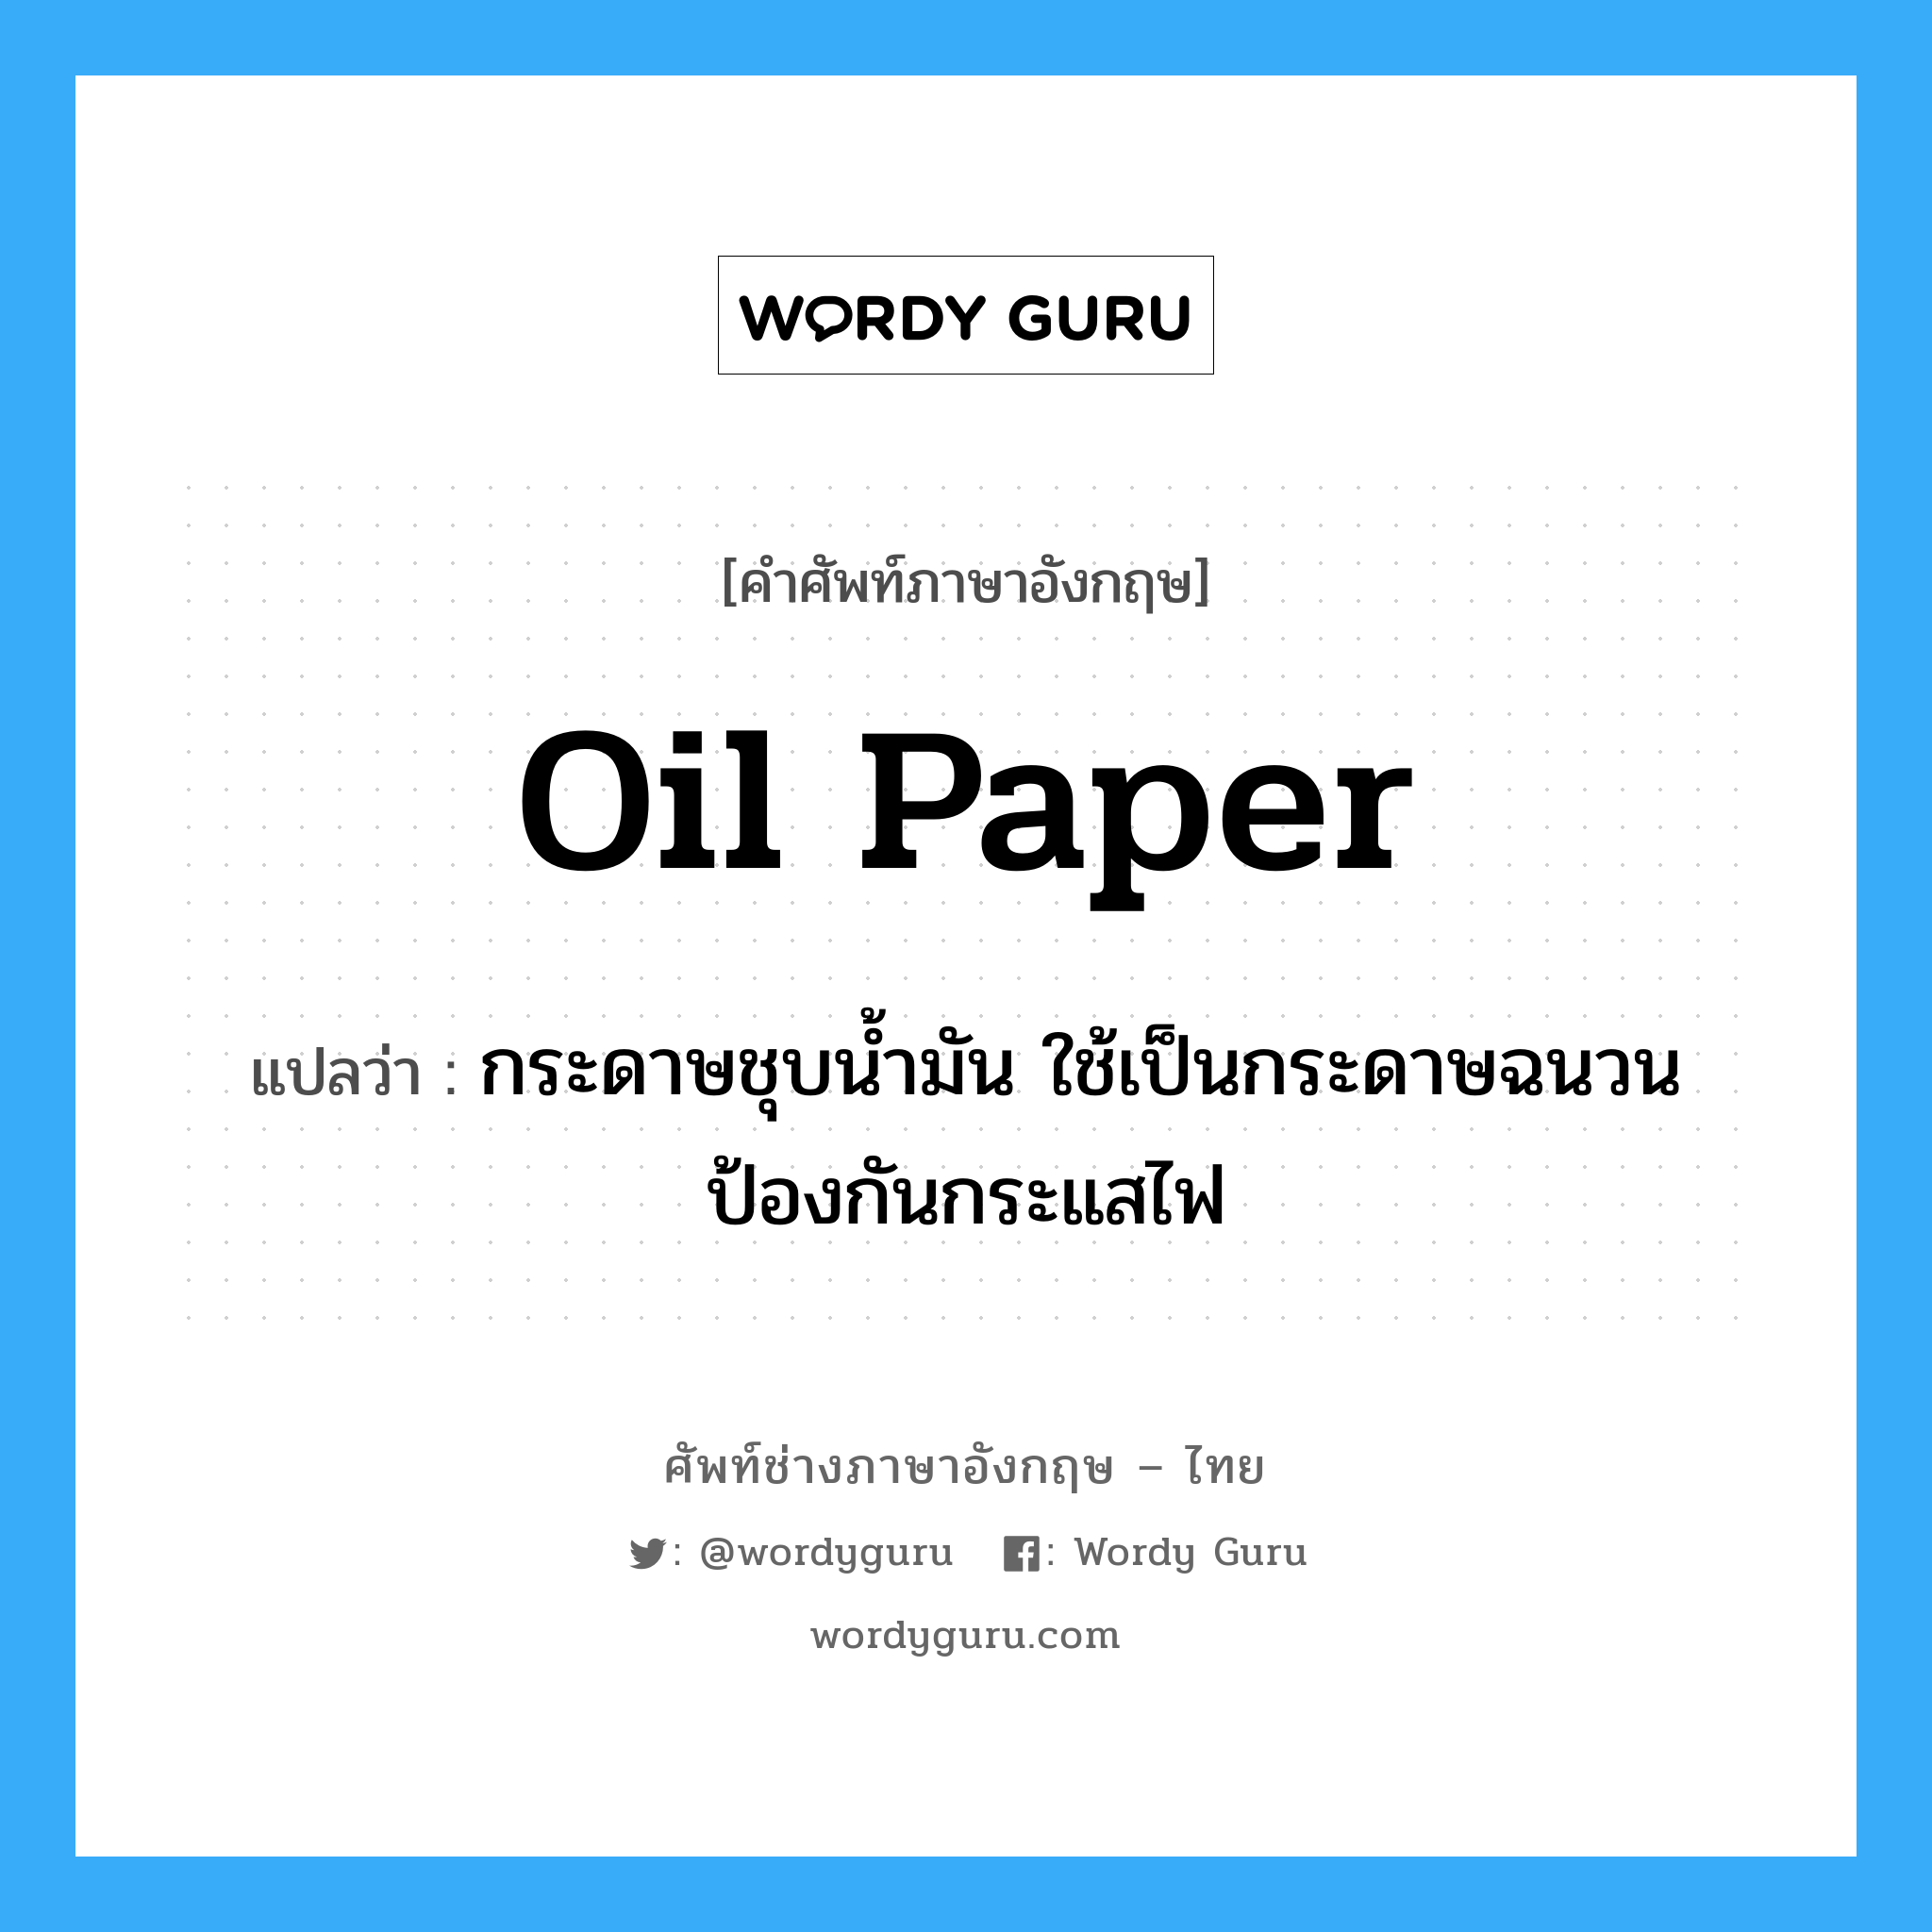 oil paper แปลว่า?, คำศัพท์ช่างภาษาอังกฤษ - ไทย oil paper คำศัพท์ภาษาอังกฤษ oil paper แปลว่า กระดาษชุบน้ำมัน ใช้เป็นกระดาษฉนวนป้องกันกระแสไฟ